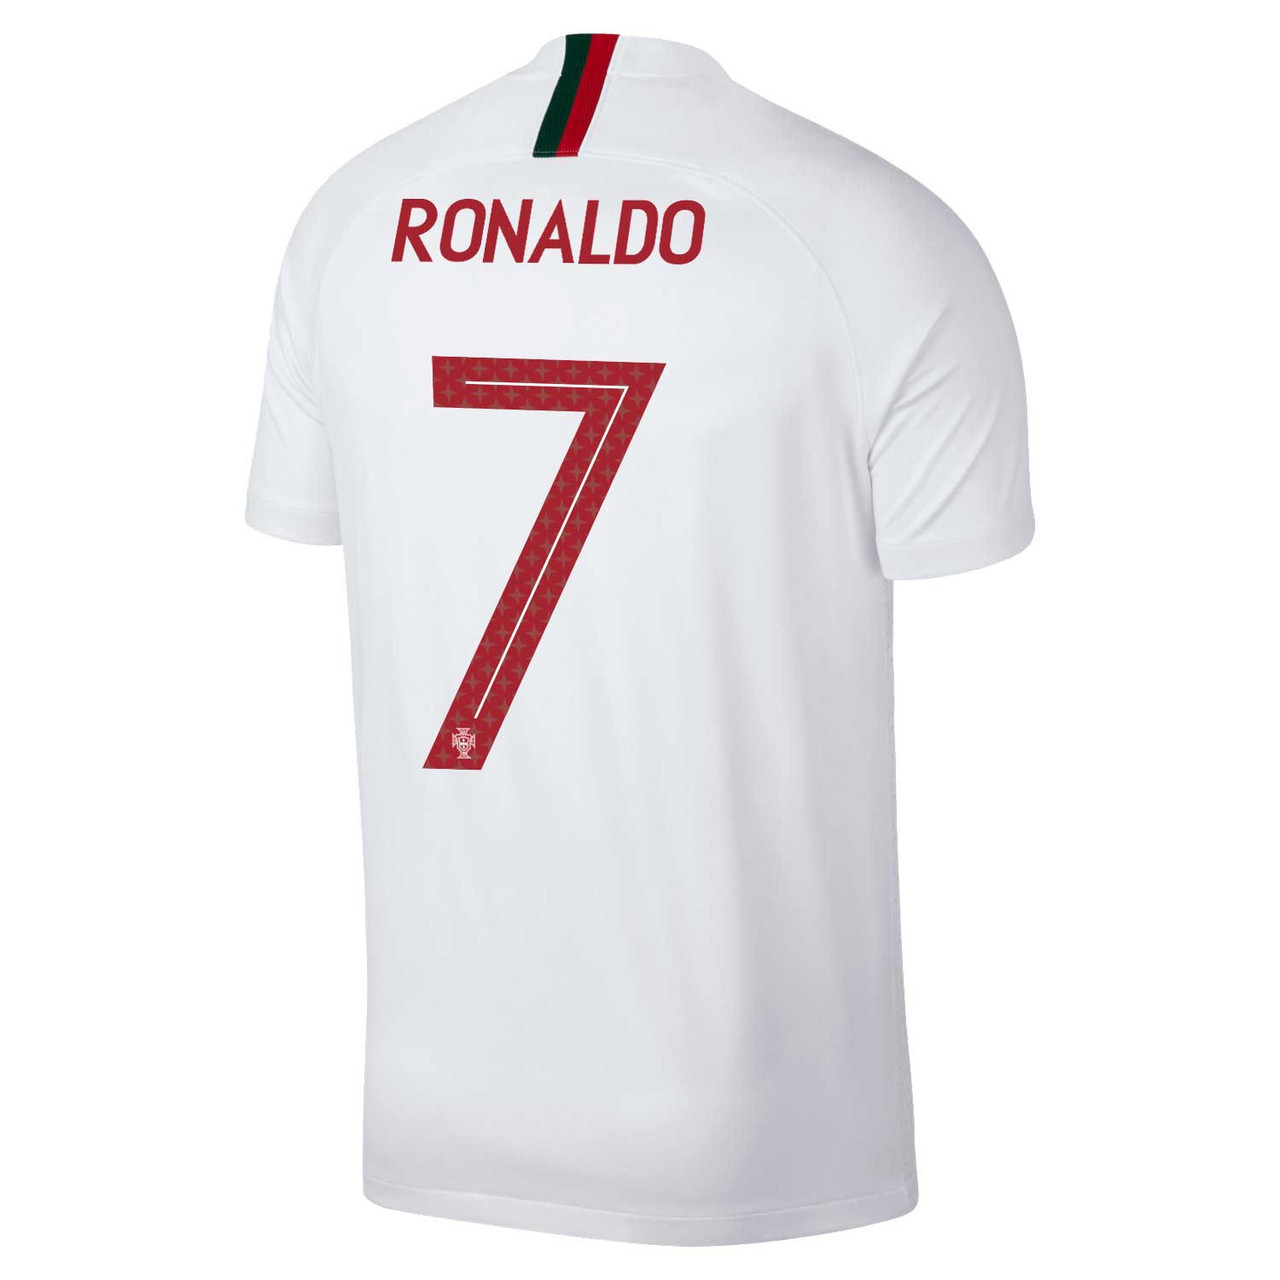 ronaldo portugal shirt